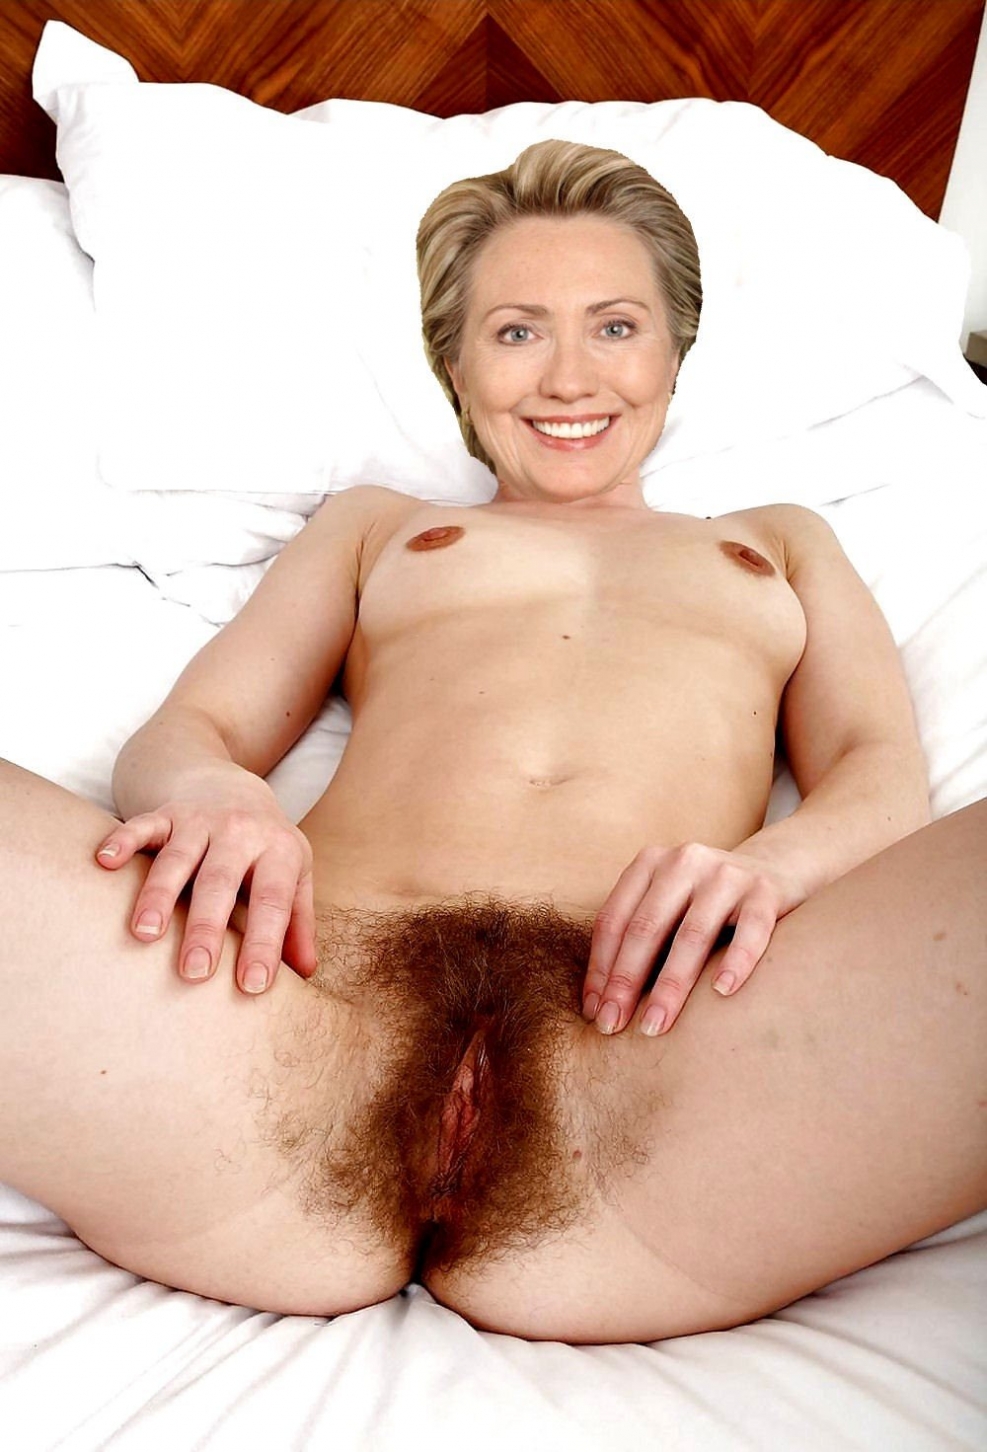 Vagina Hillary Clinton.